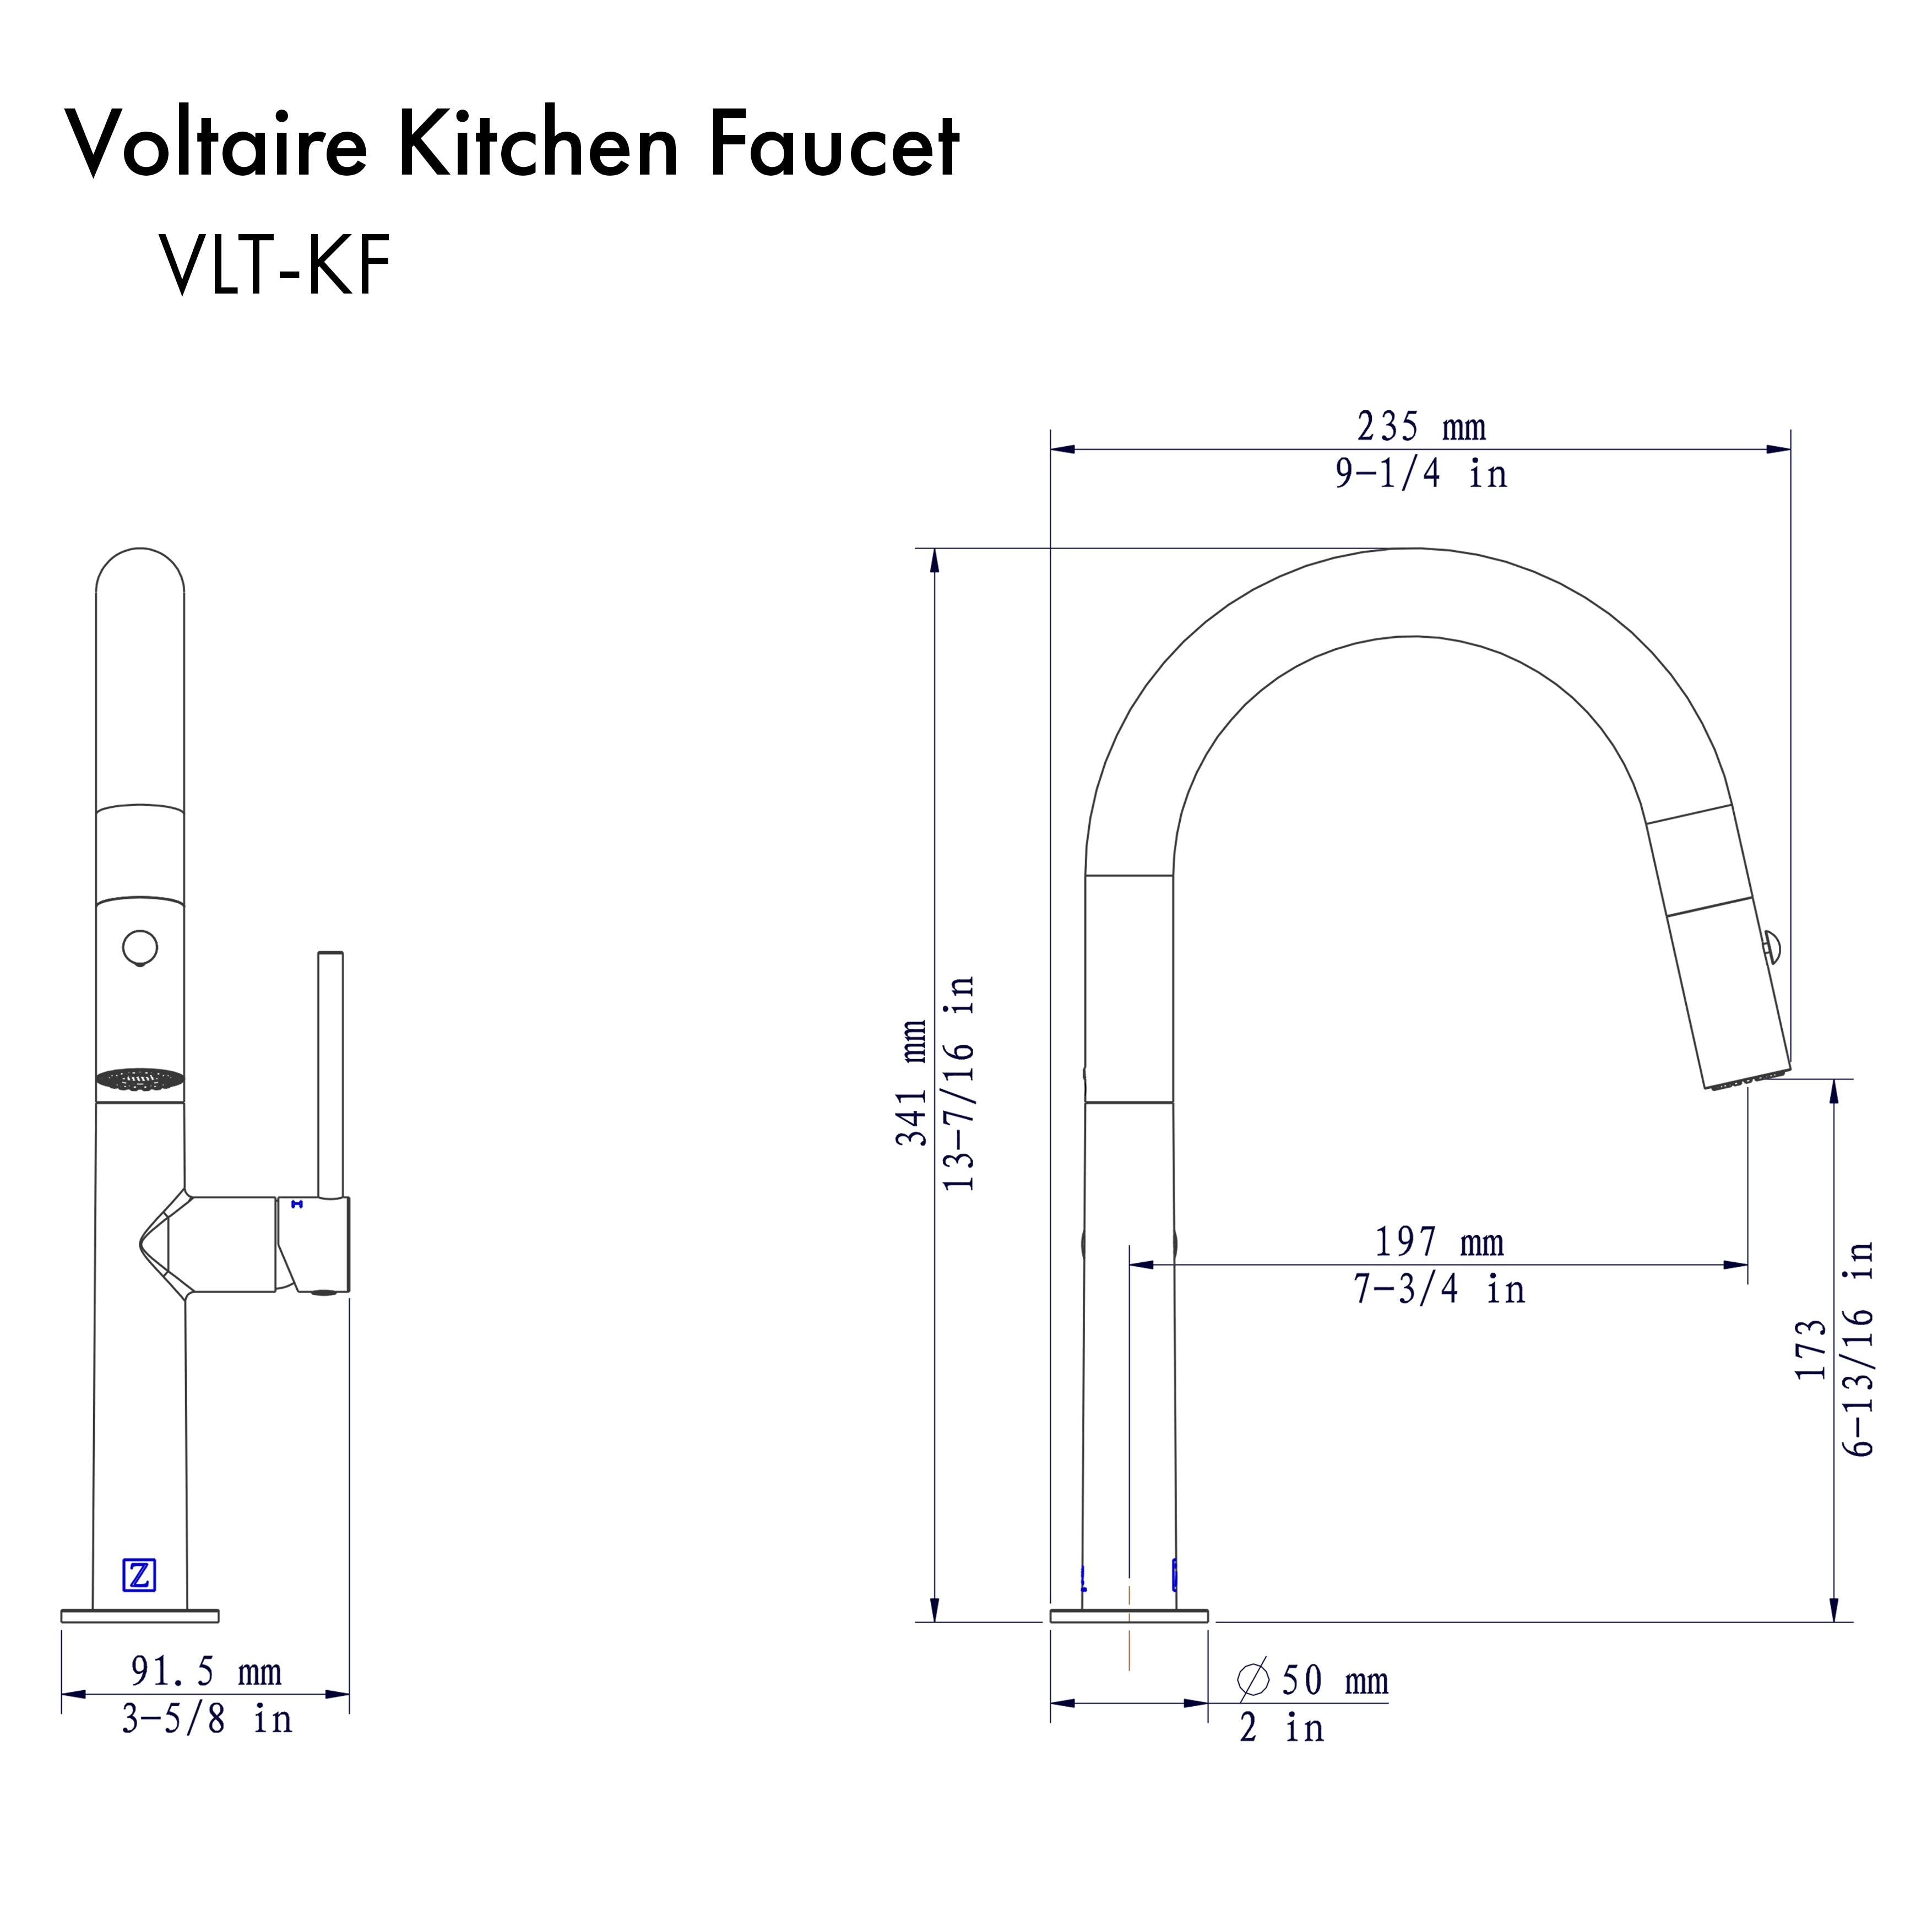 ZLINE Voltaire Kitchen Faucet in Brushed Nickel (VLT-KF-BN)